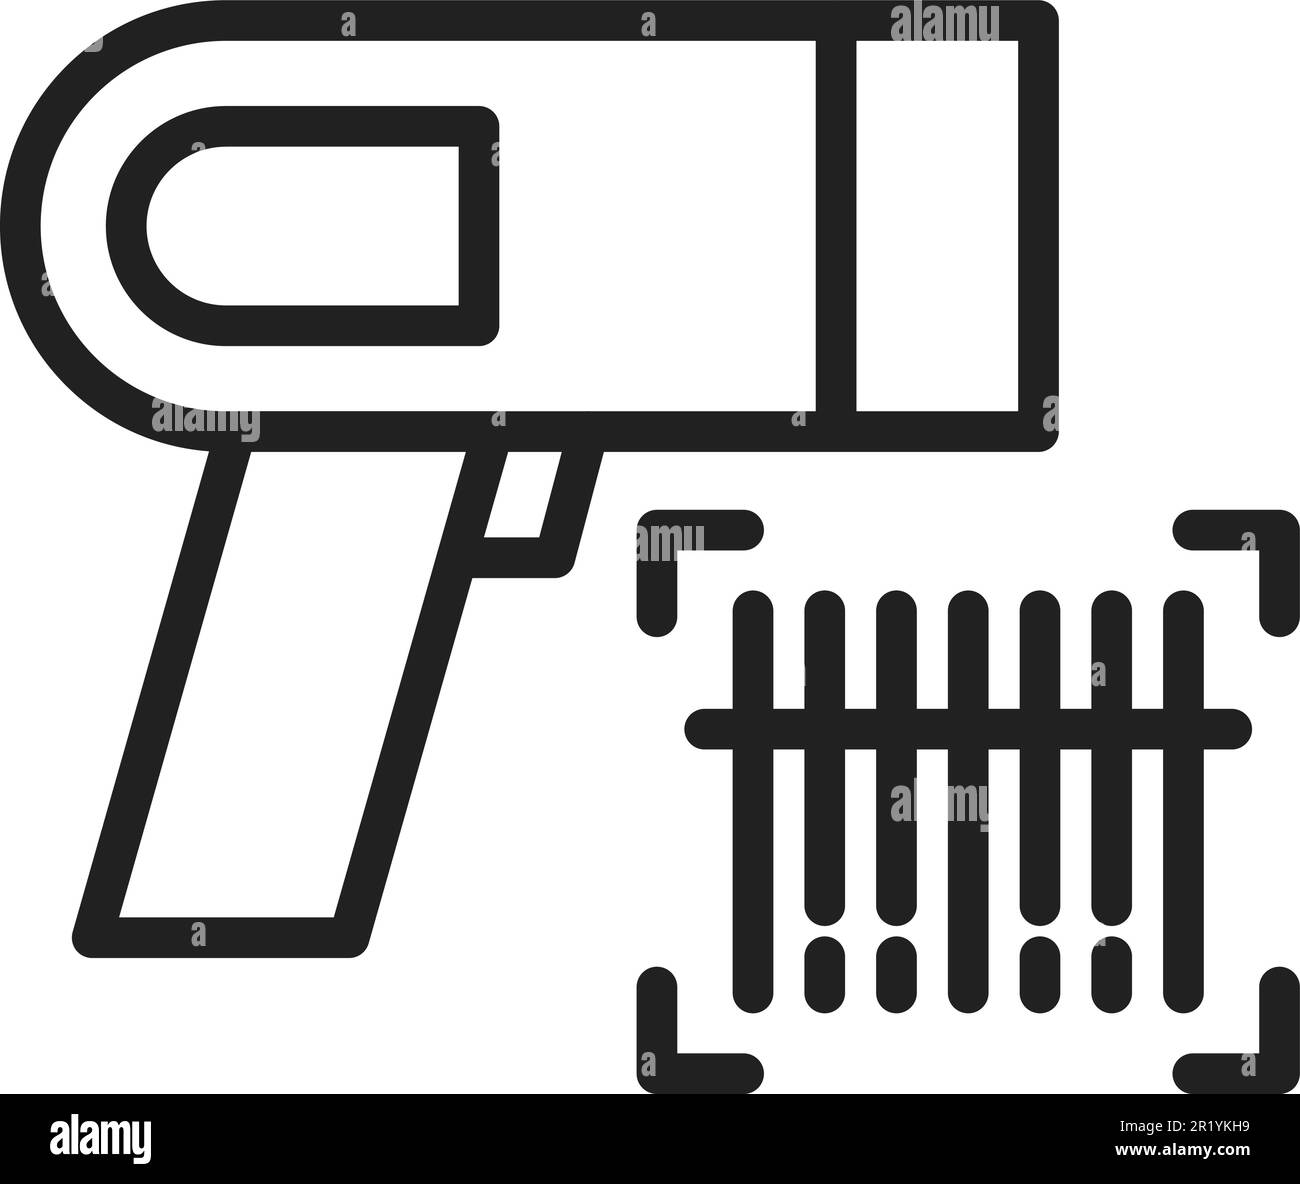 Immagine vettoriale dell'icona del lettore di codici a barre. Illustrazione Vettoriale